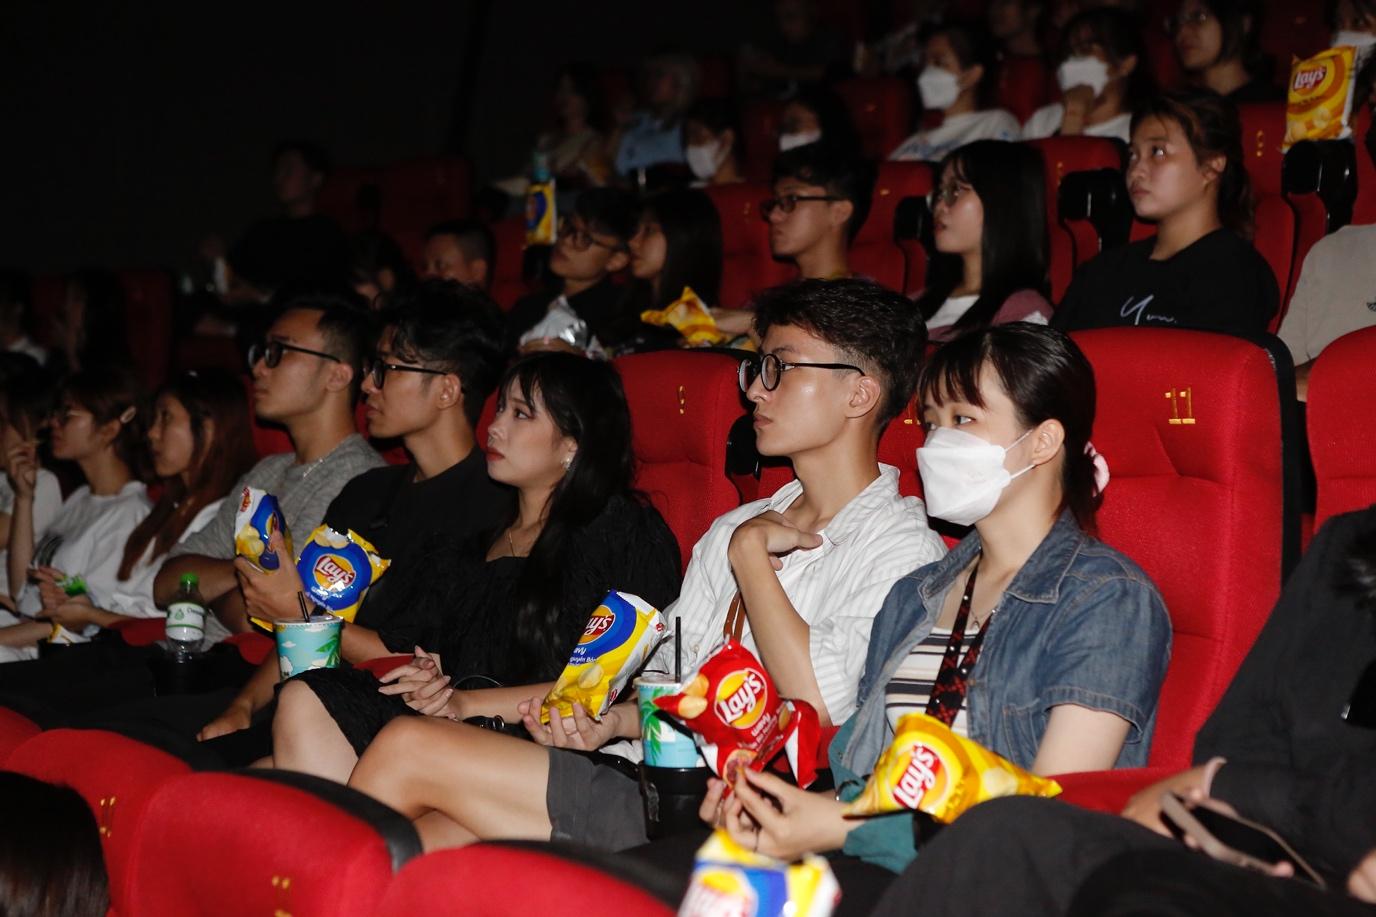 Lay’s Việt Nam biến rạp phim trong mơ của hội mê snack thành hiện thực nhờ phụ đề “giòn rụm” - Ảnh 7.